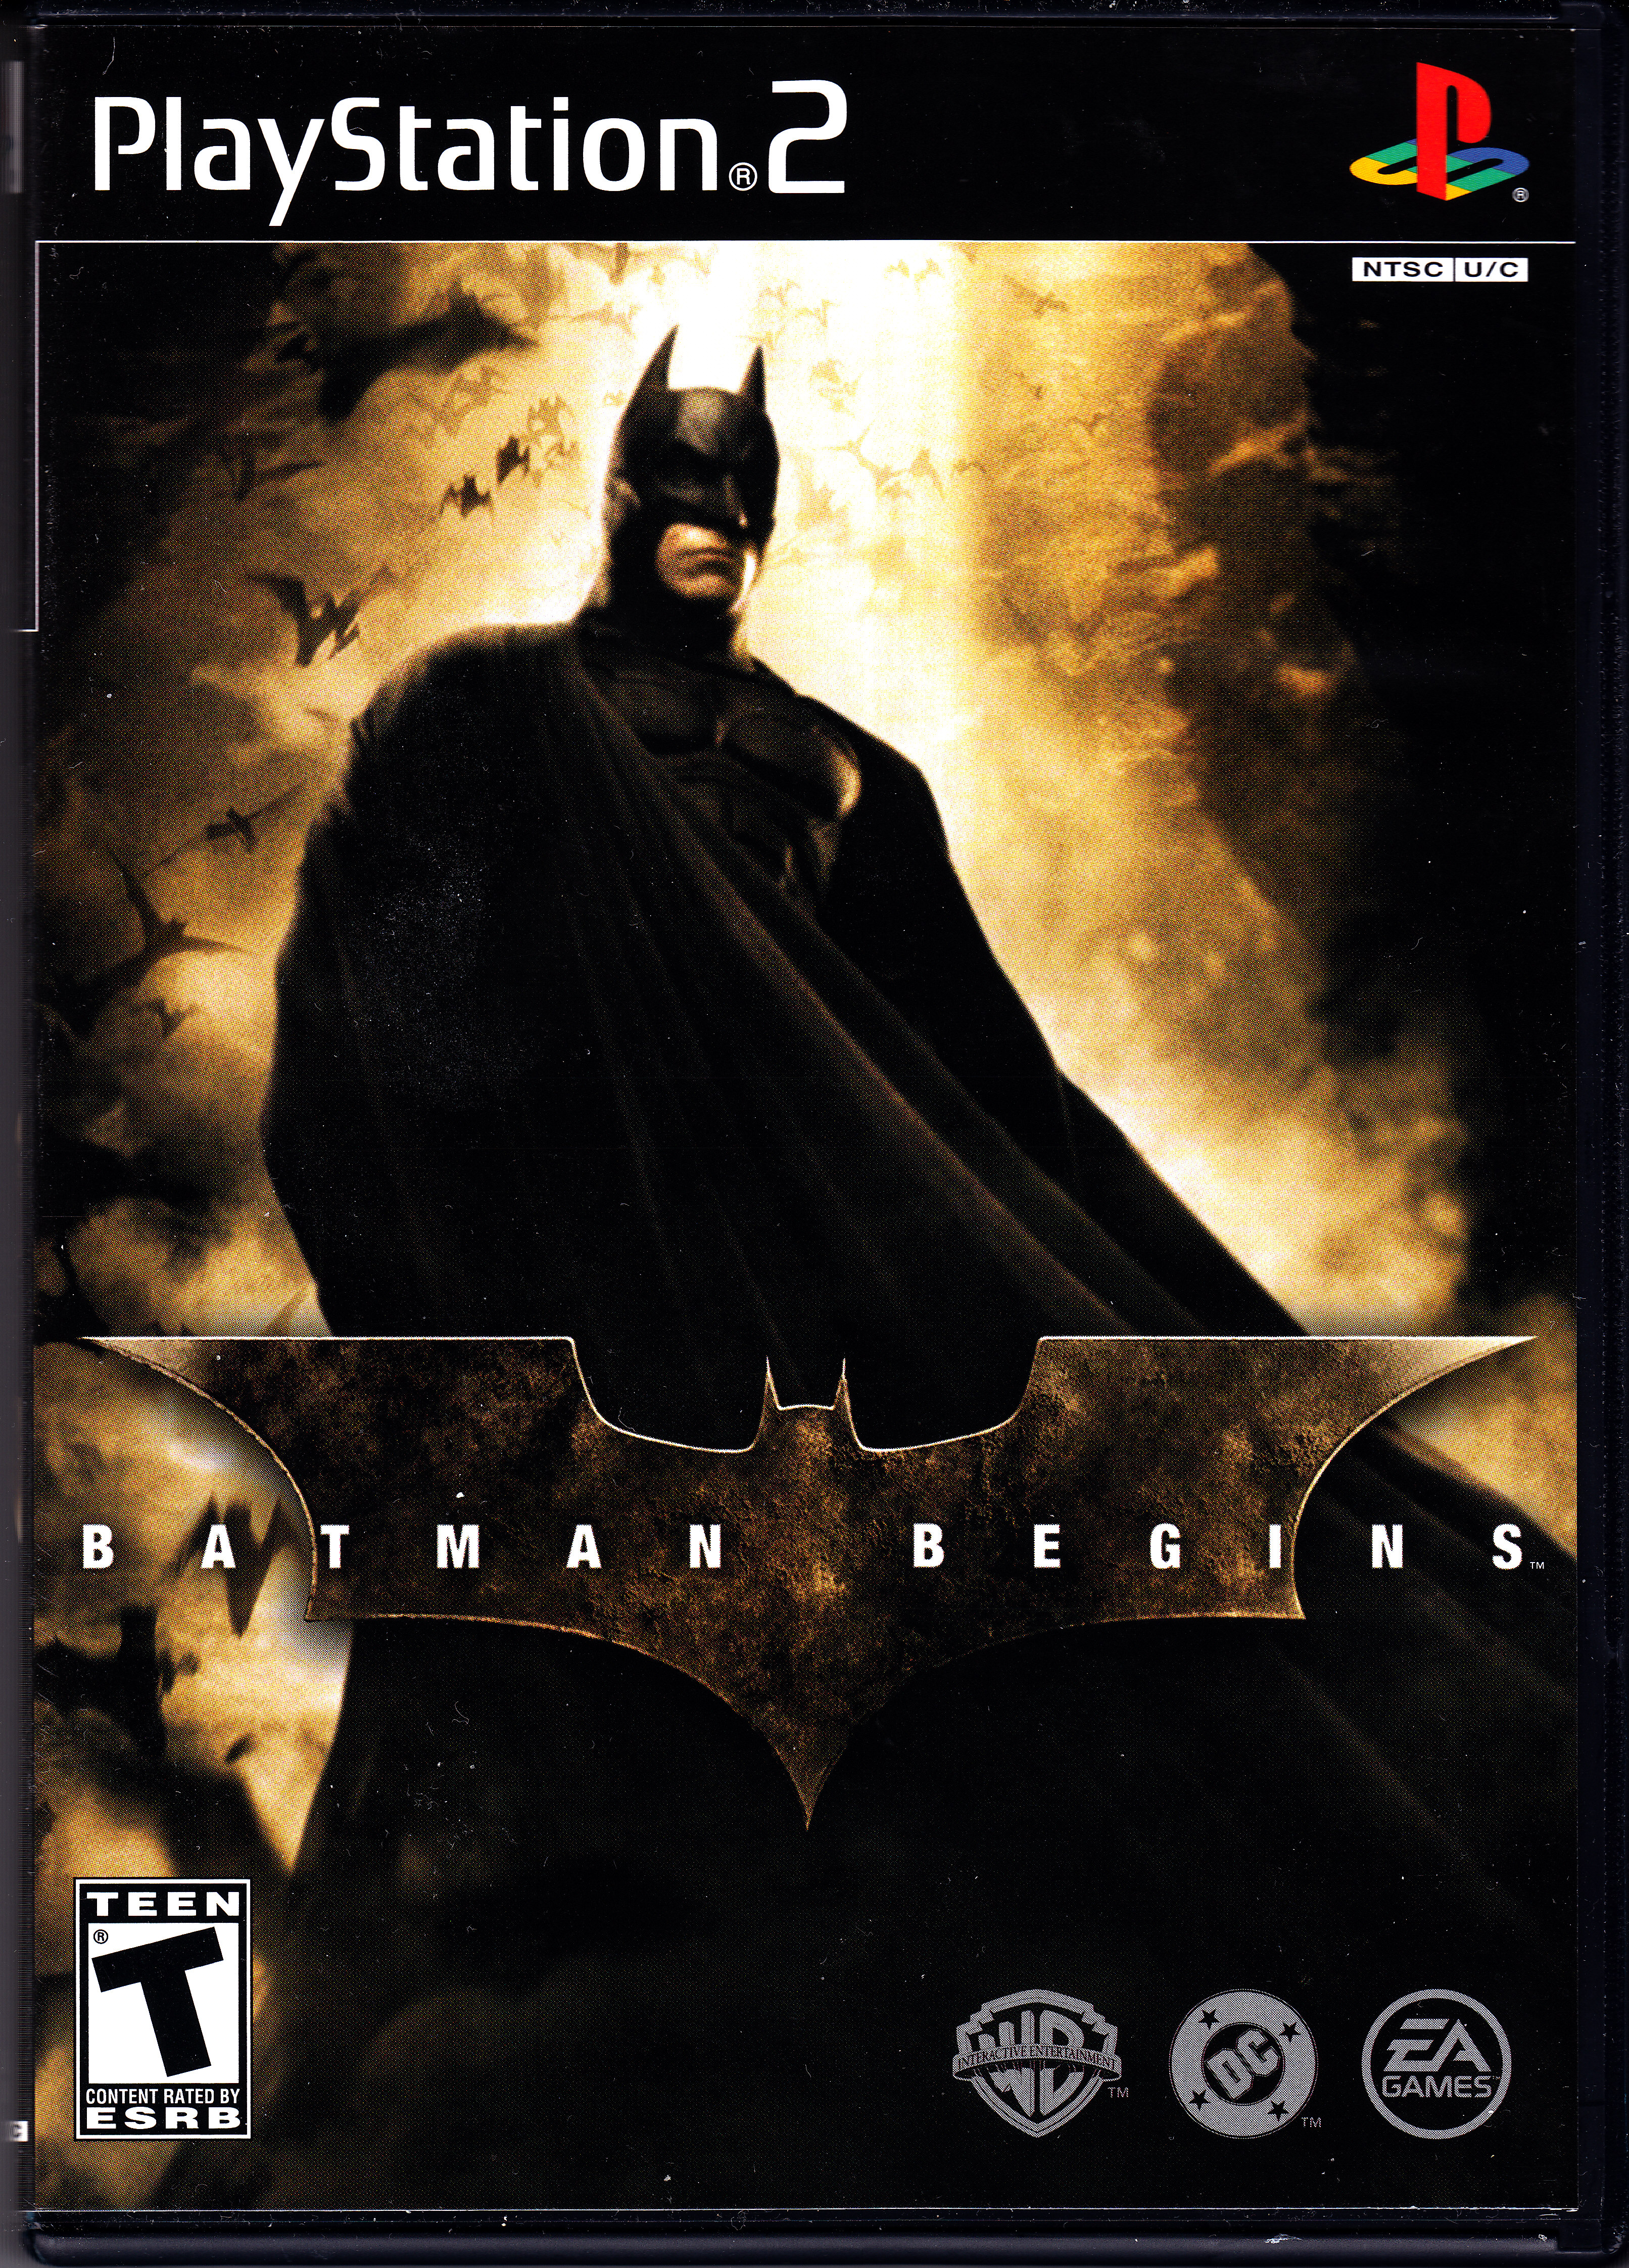 Batman Begins (video game) | Warner Bros. Entertainment Wiki | Fandom